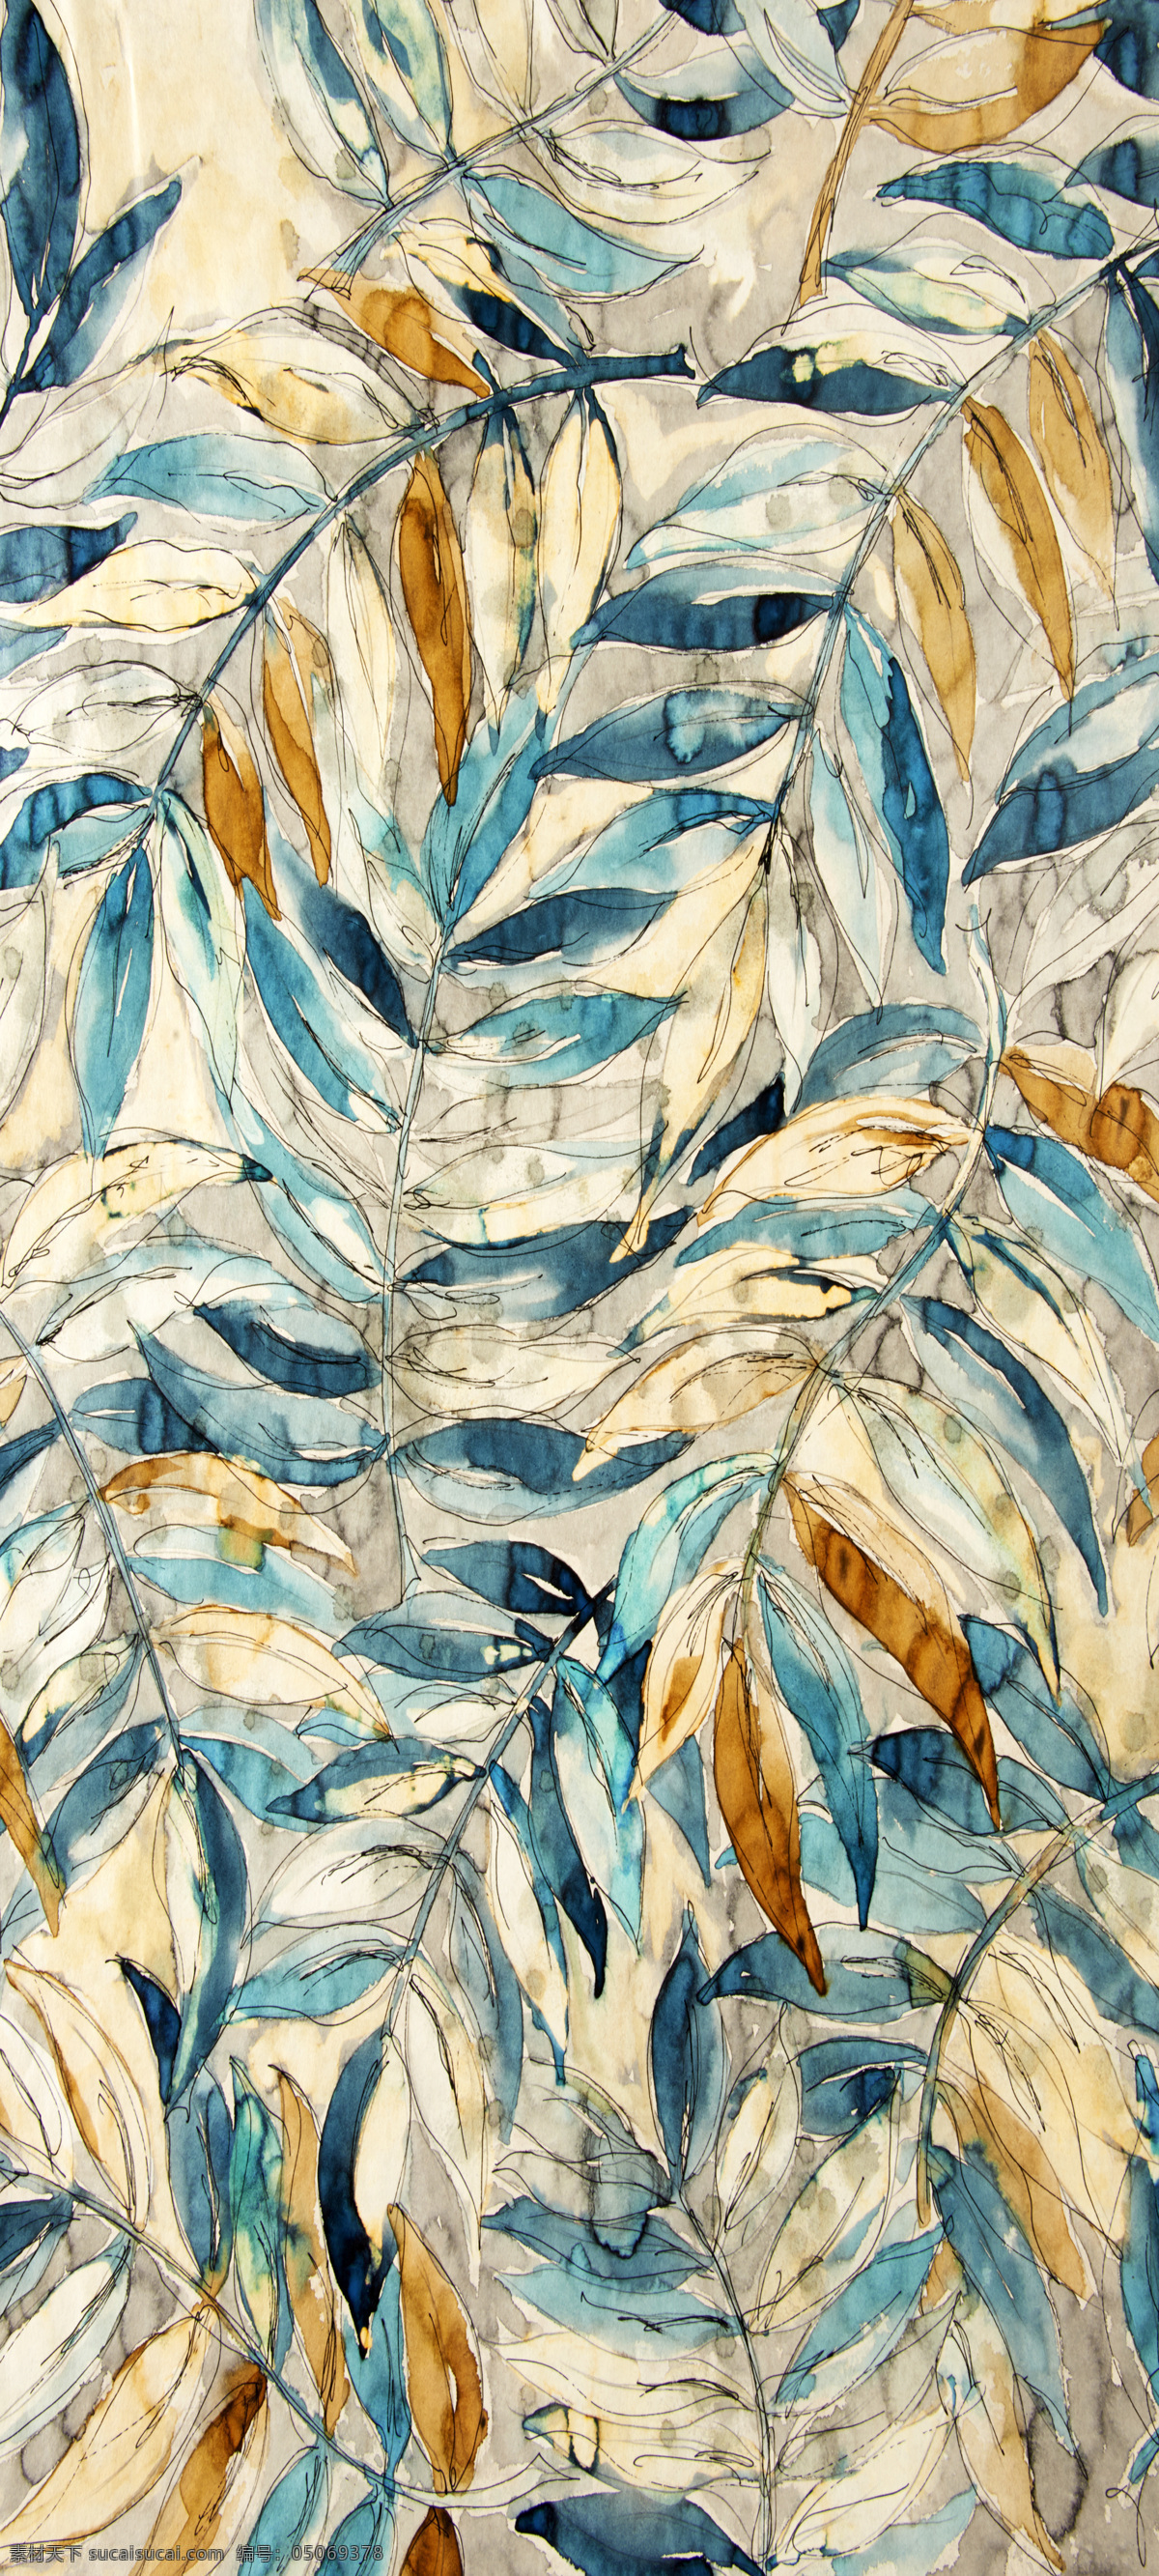 欧美风格 抽象壁画 叶子图案贴 抽象 壁画 叶子 手绘 植物 涂鸦